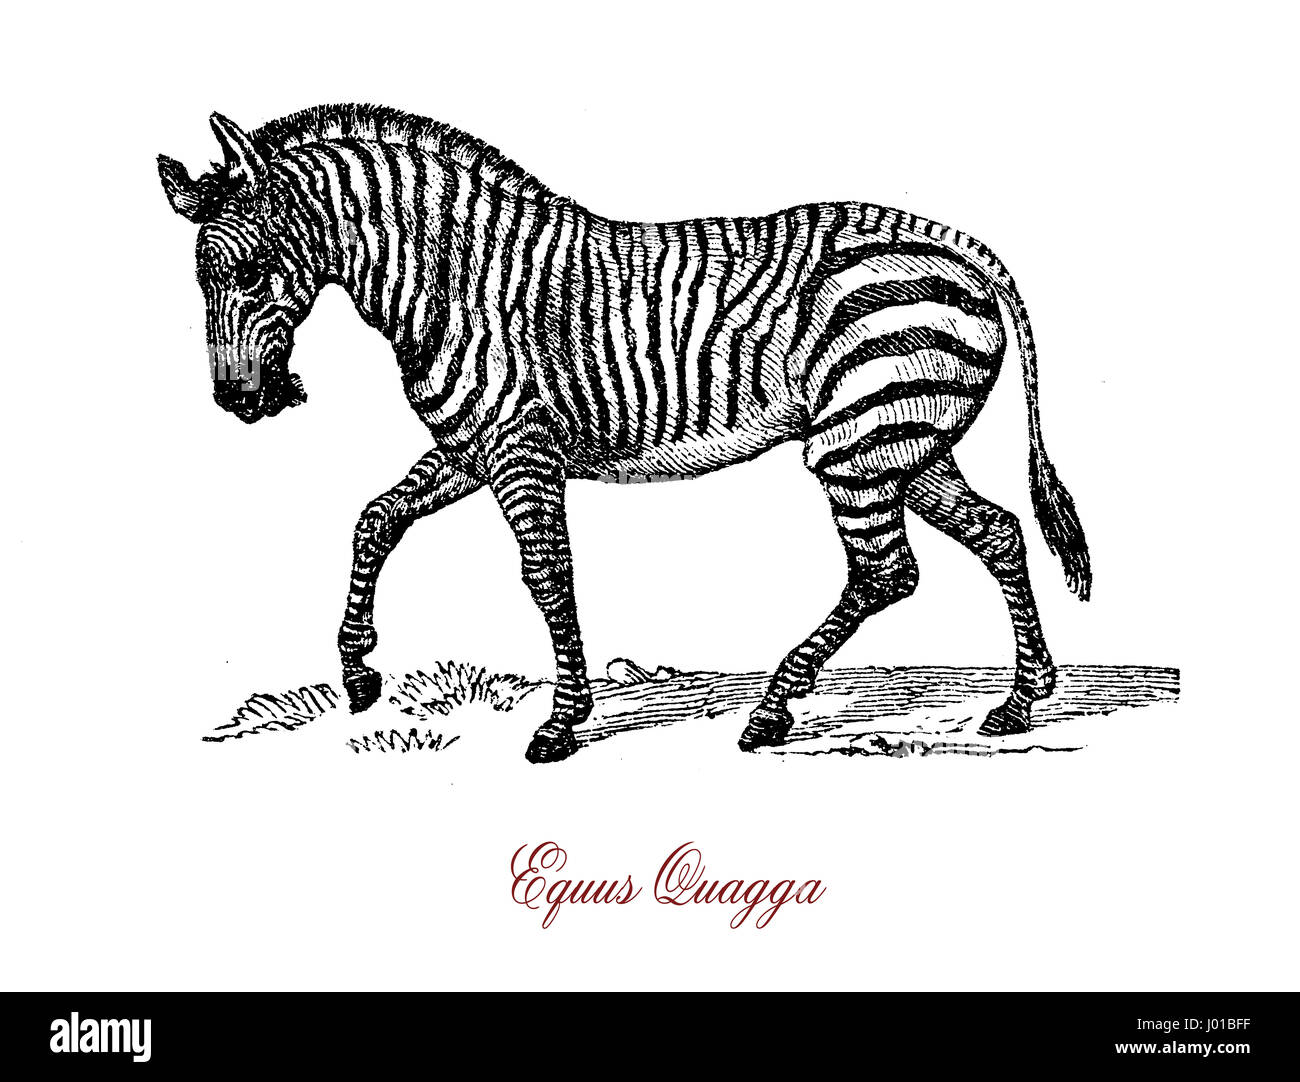 Ebenen Zebra (Equus Quagga) ist die häufigste und geografisch weit verbreitete Arten der Zebra. Es reicht vom Süden Äthiopiens durch Ostafrika so weit südlich wie Botswana und östlichen Südafrika. Stockfoto